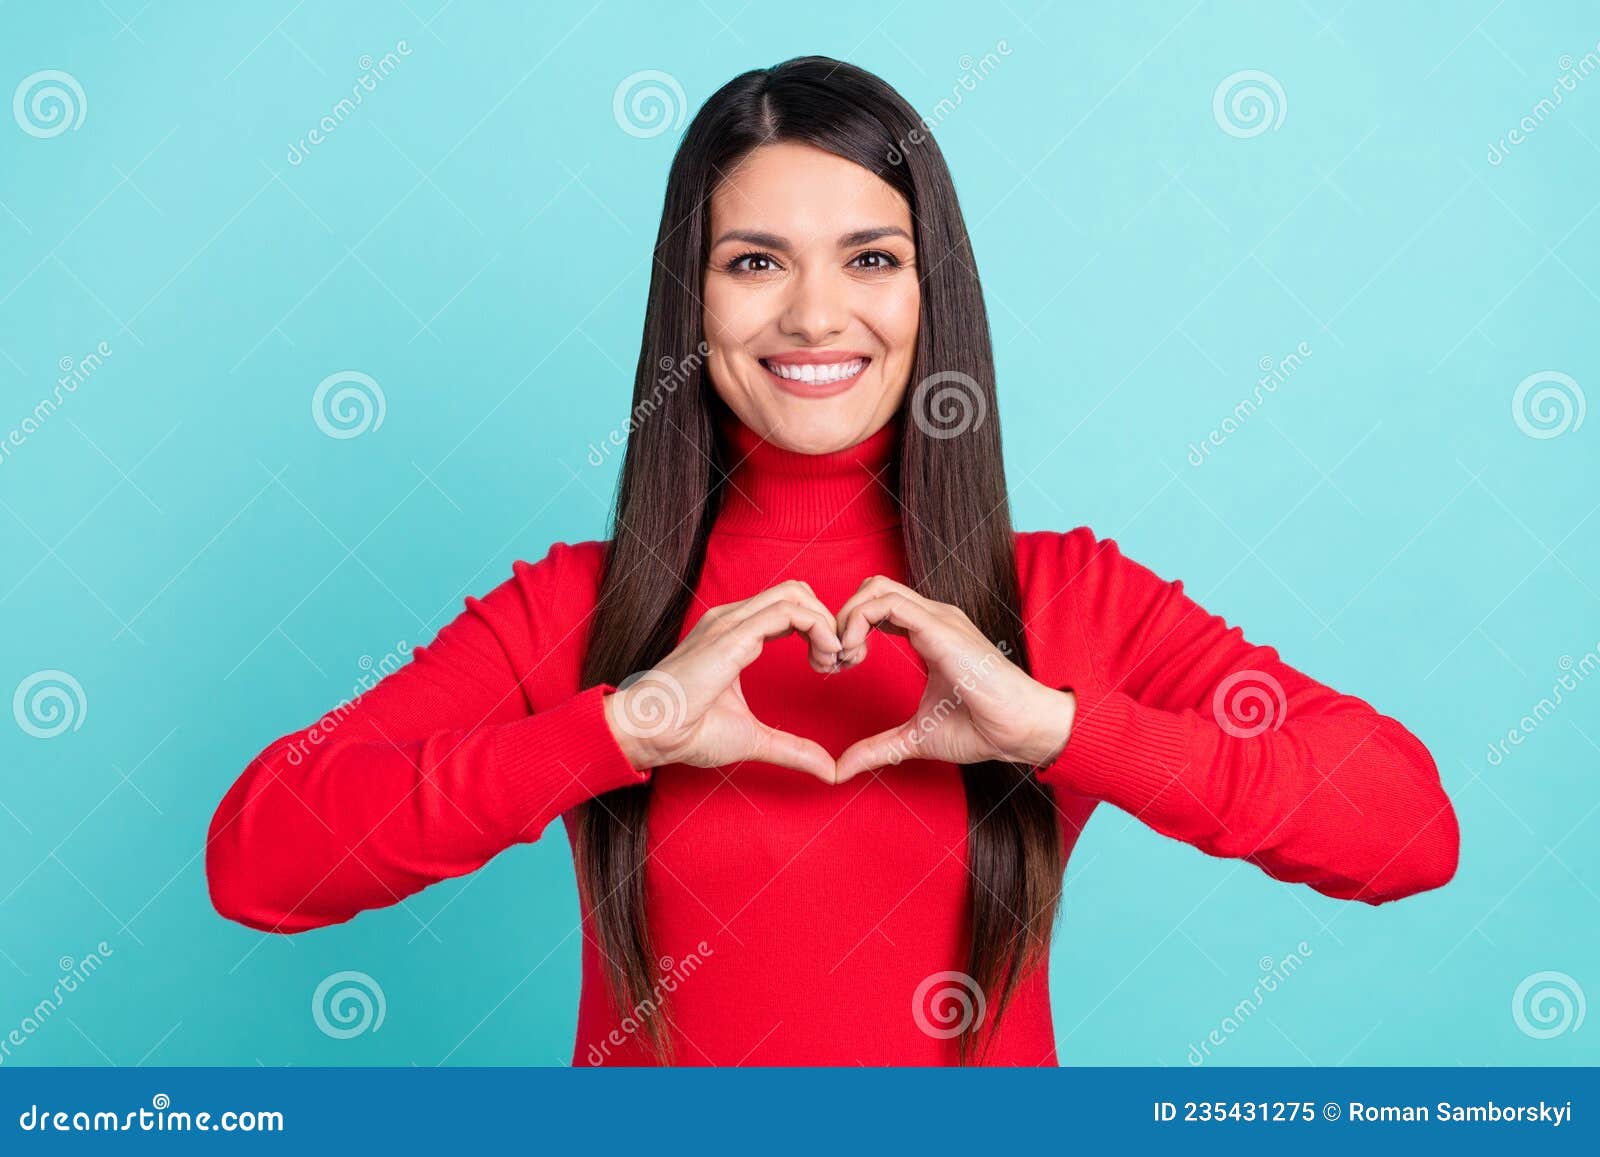 Foto De Una Mujer Dulce Y Madura Usando Suéter Rojo Que Muestra Las Manos Brazos Corazón Sonriendo Fondo De Color Turquesa Imagen de archivo - Imagen de hispanico, forma: 235431275